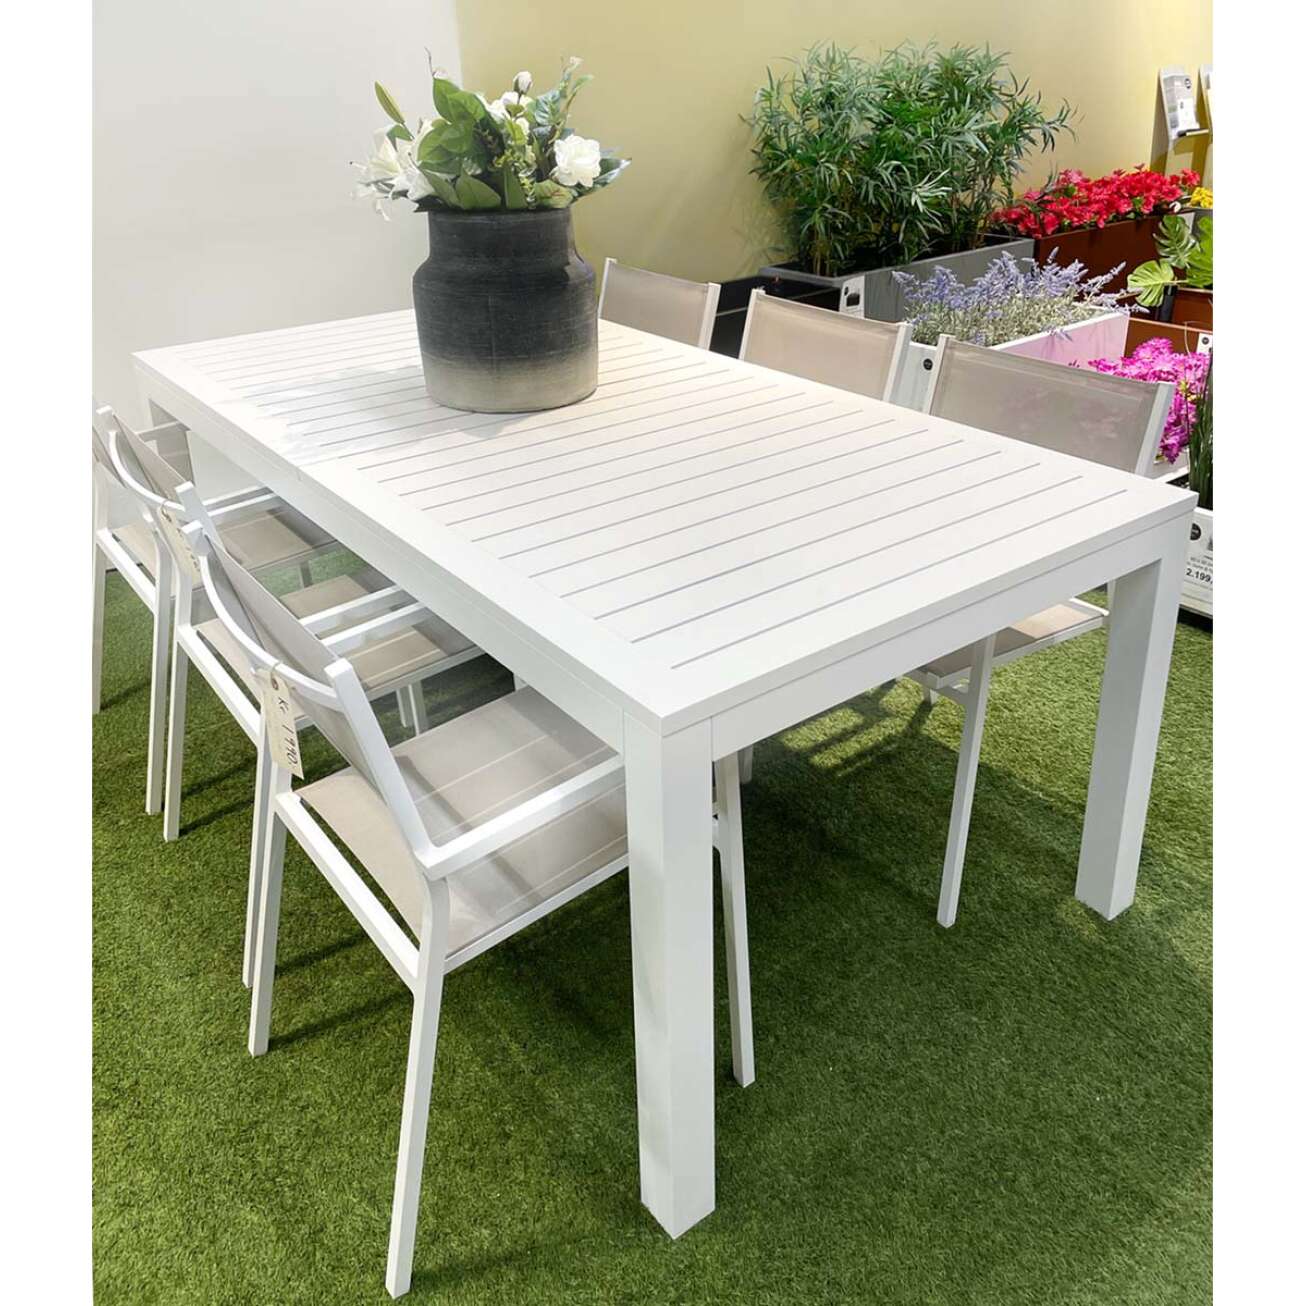 Salg på stort hvitt Gardenart hagebord med 6 spisestoler i kaki